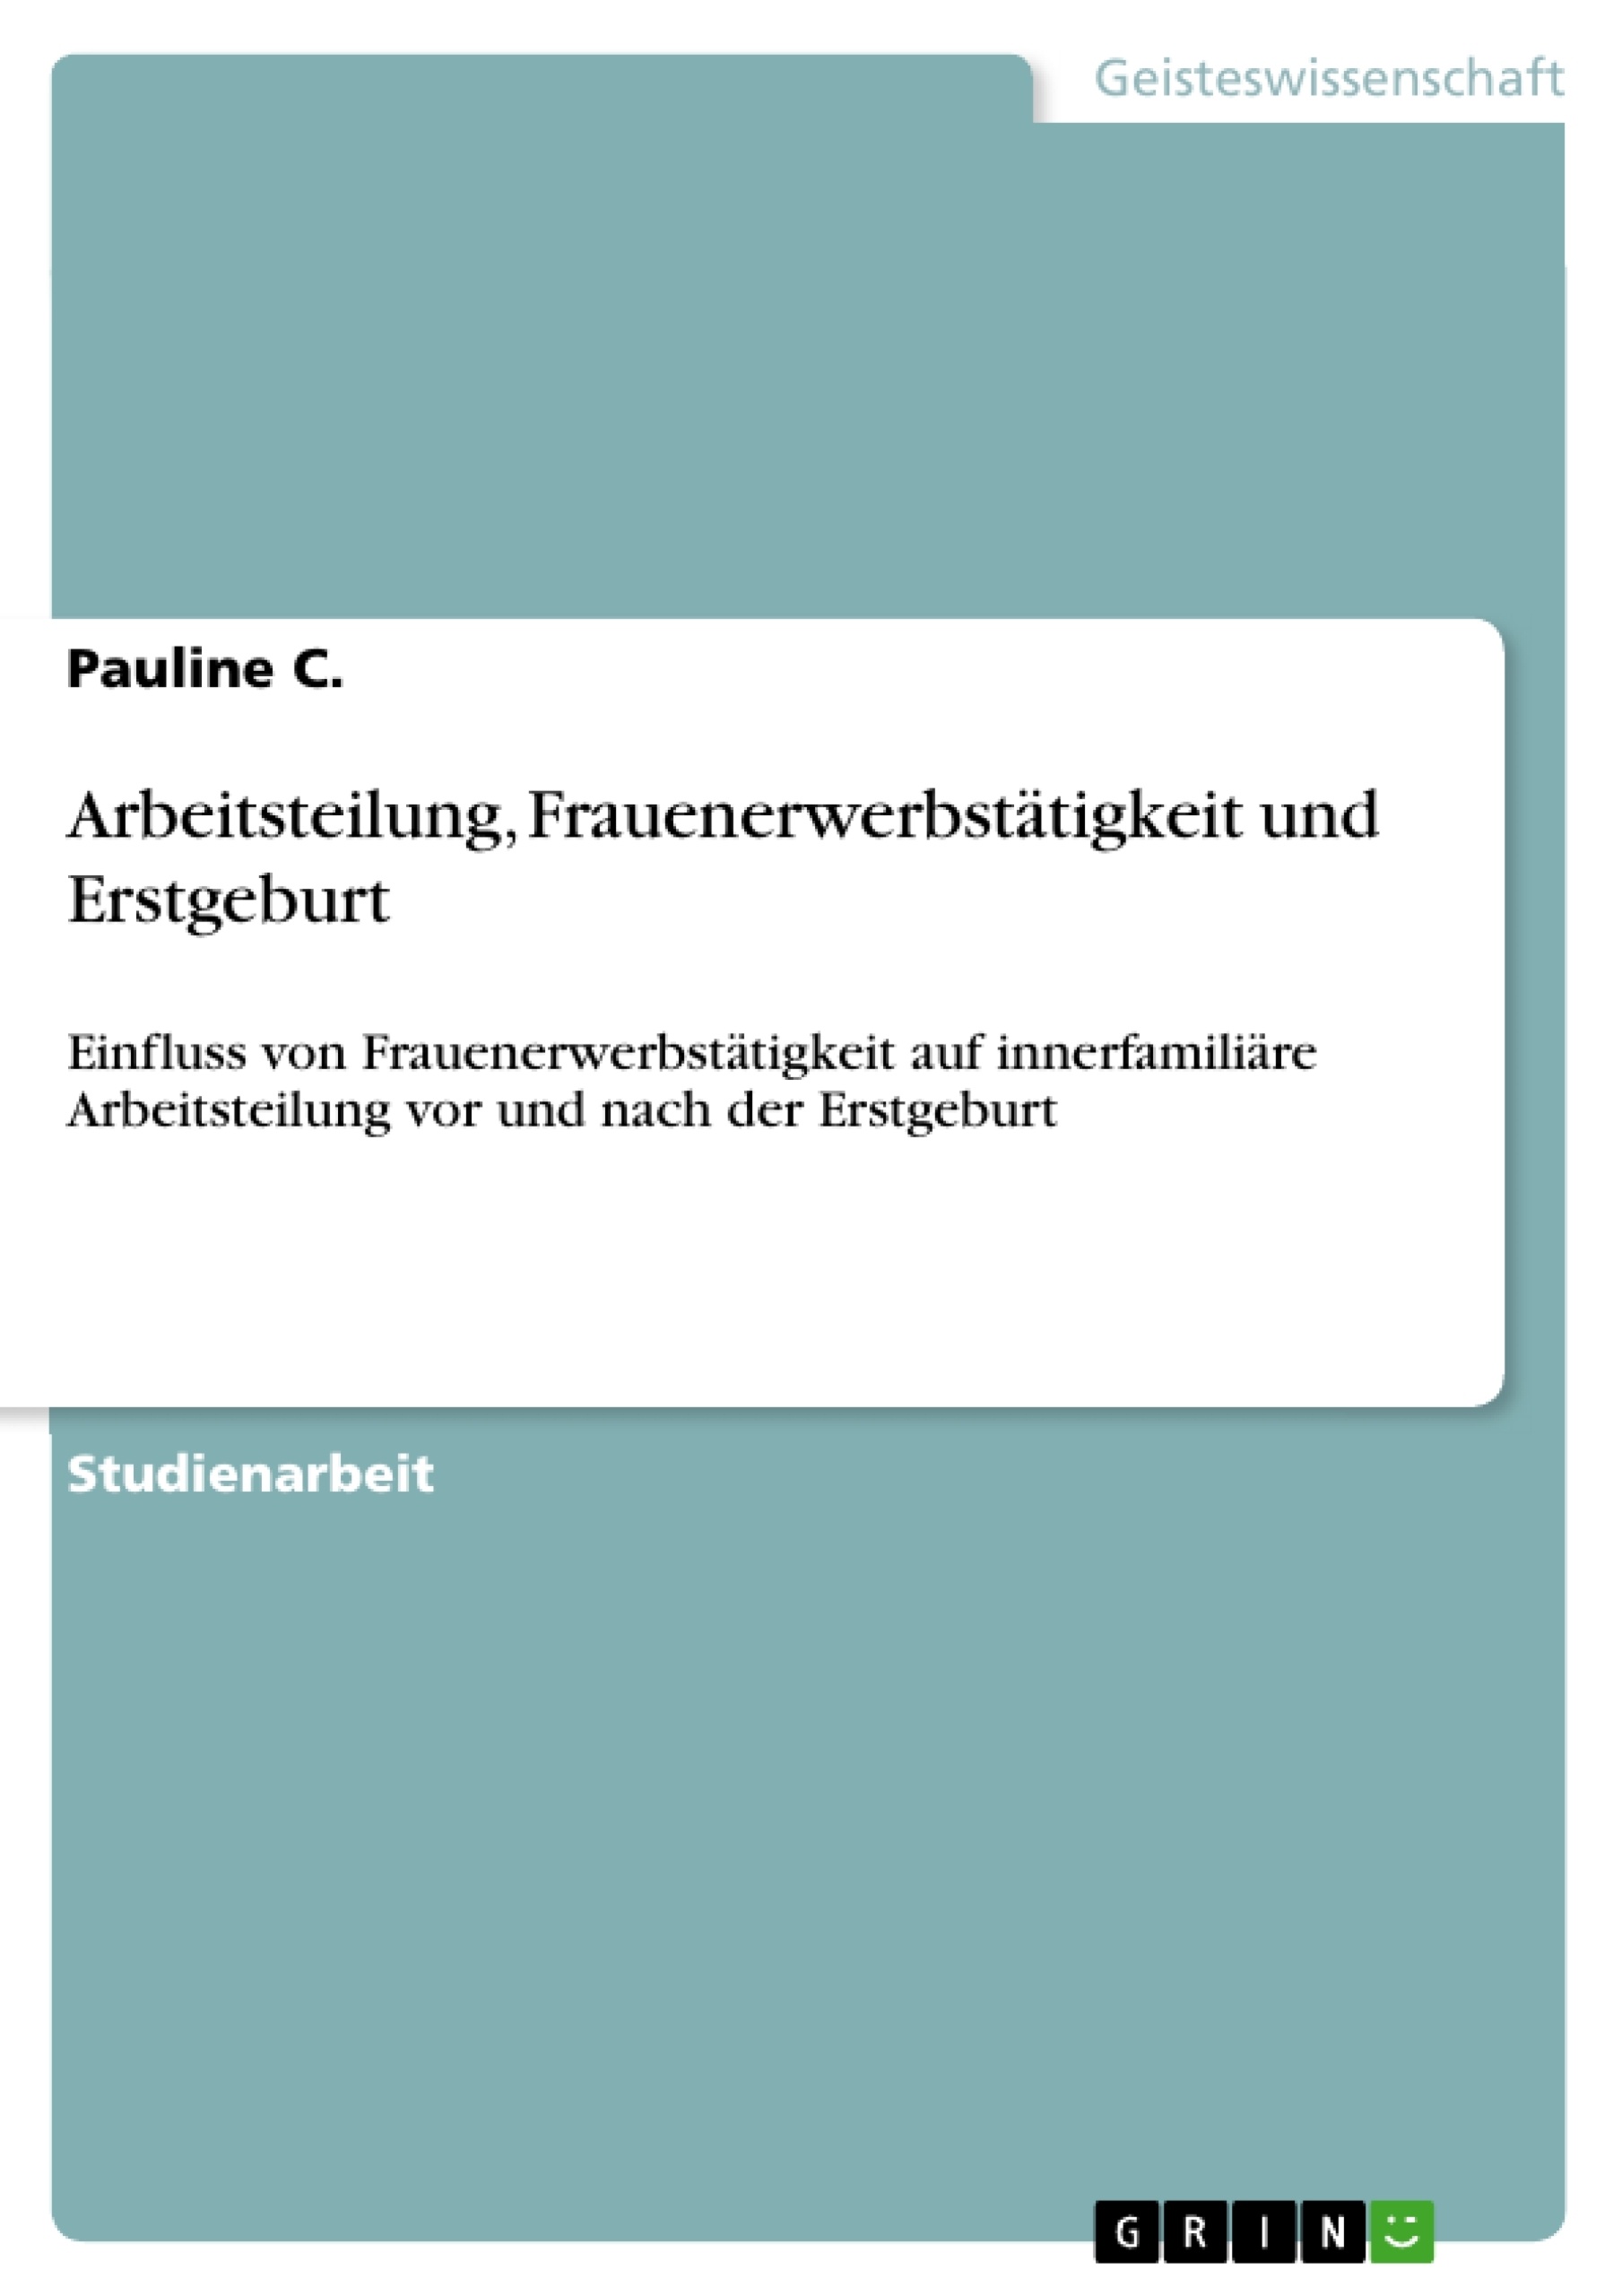 Title: Arbeitsteilung, Frauenerwerbstätigkeit und Erstgeburt